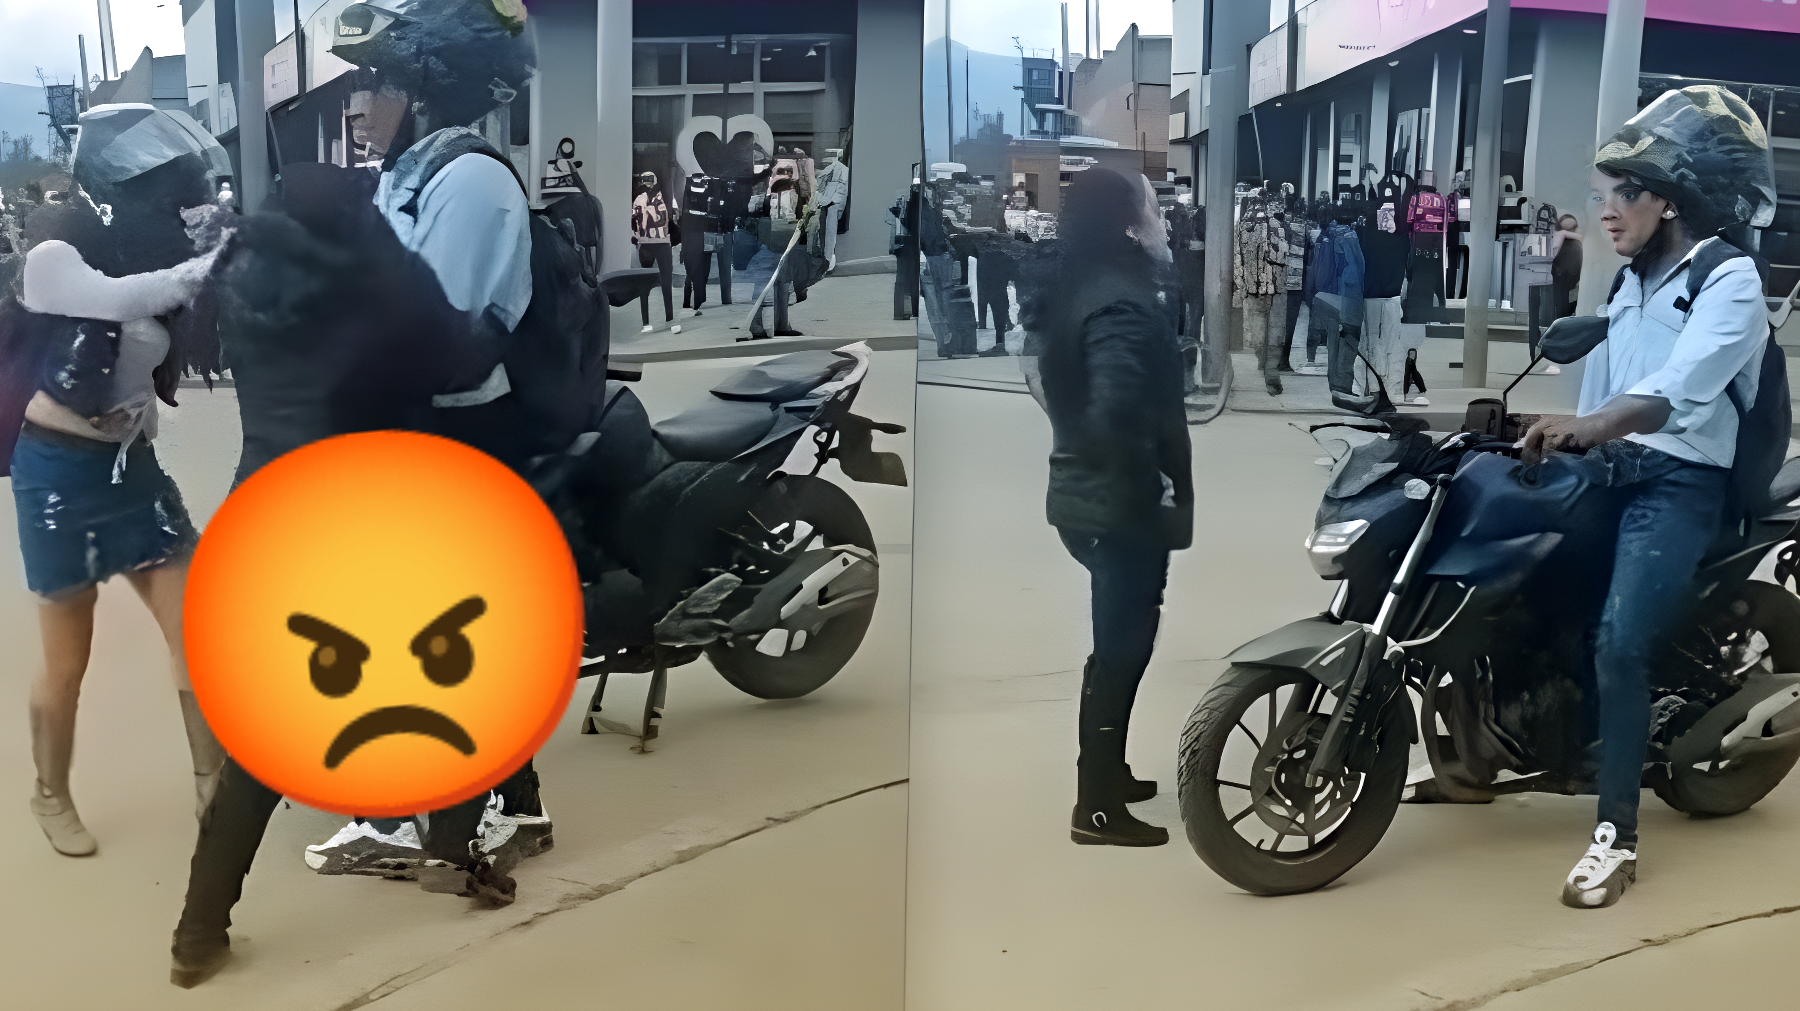 La rivelazione shock: una donna scopre il marito con l'amante sulla moto che gli aveva regalato lei (VIDEO)